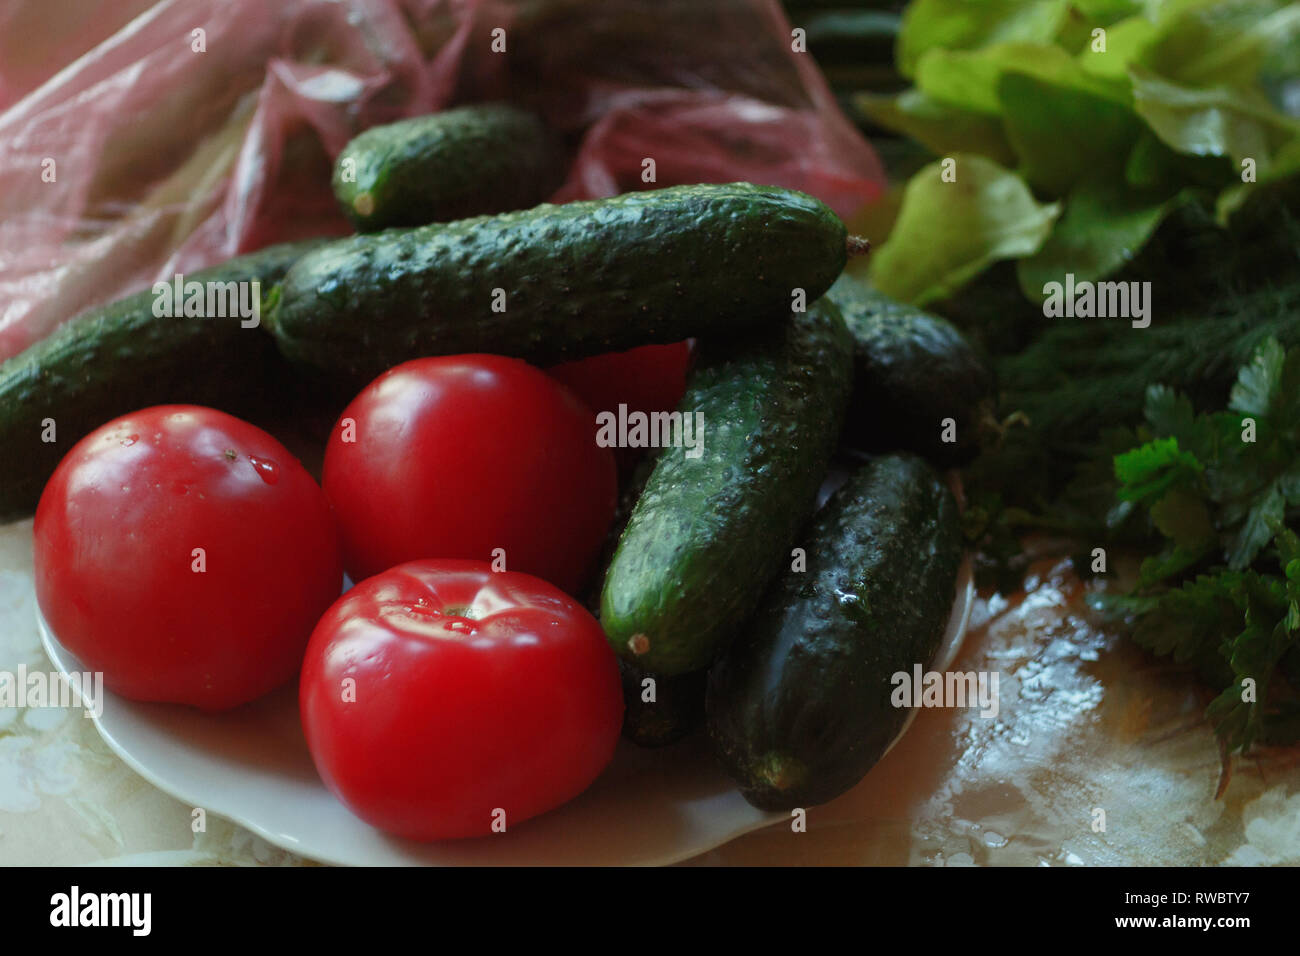 Des légumes d'été sur la table. Les tomates, concombres et les verts se trouvant sur la table. Banque D'Images